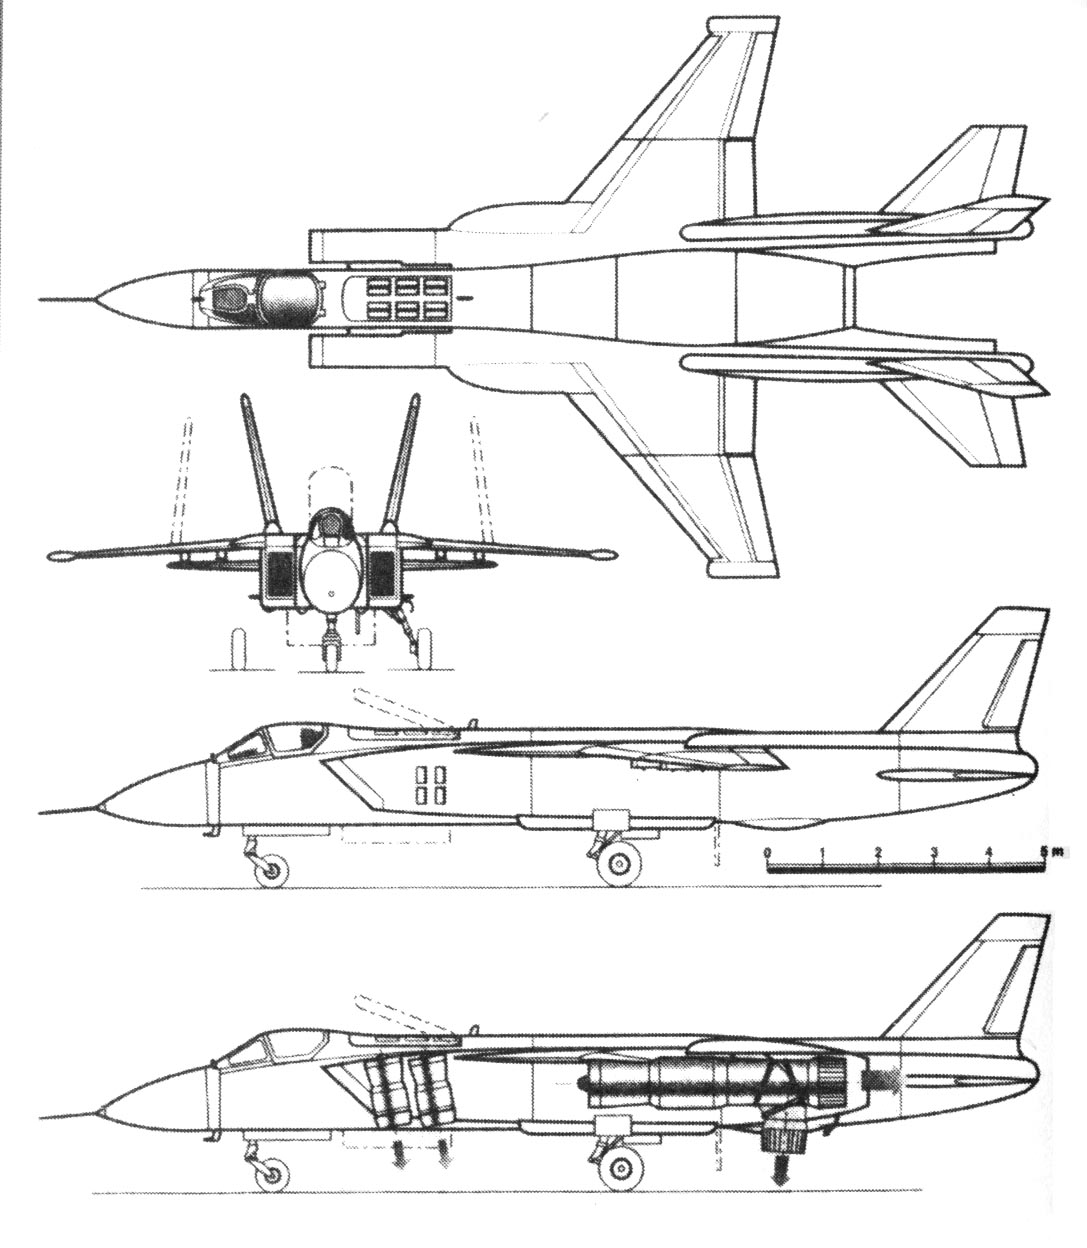 http://airbase.ru/hangar/planes/russia/yak/yak-141/img/yak141s.jpg